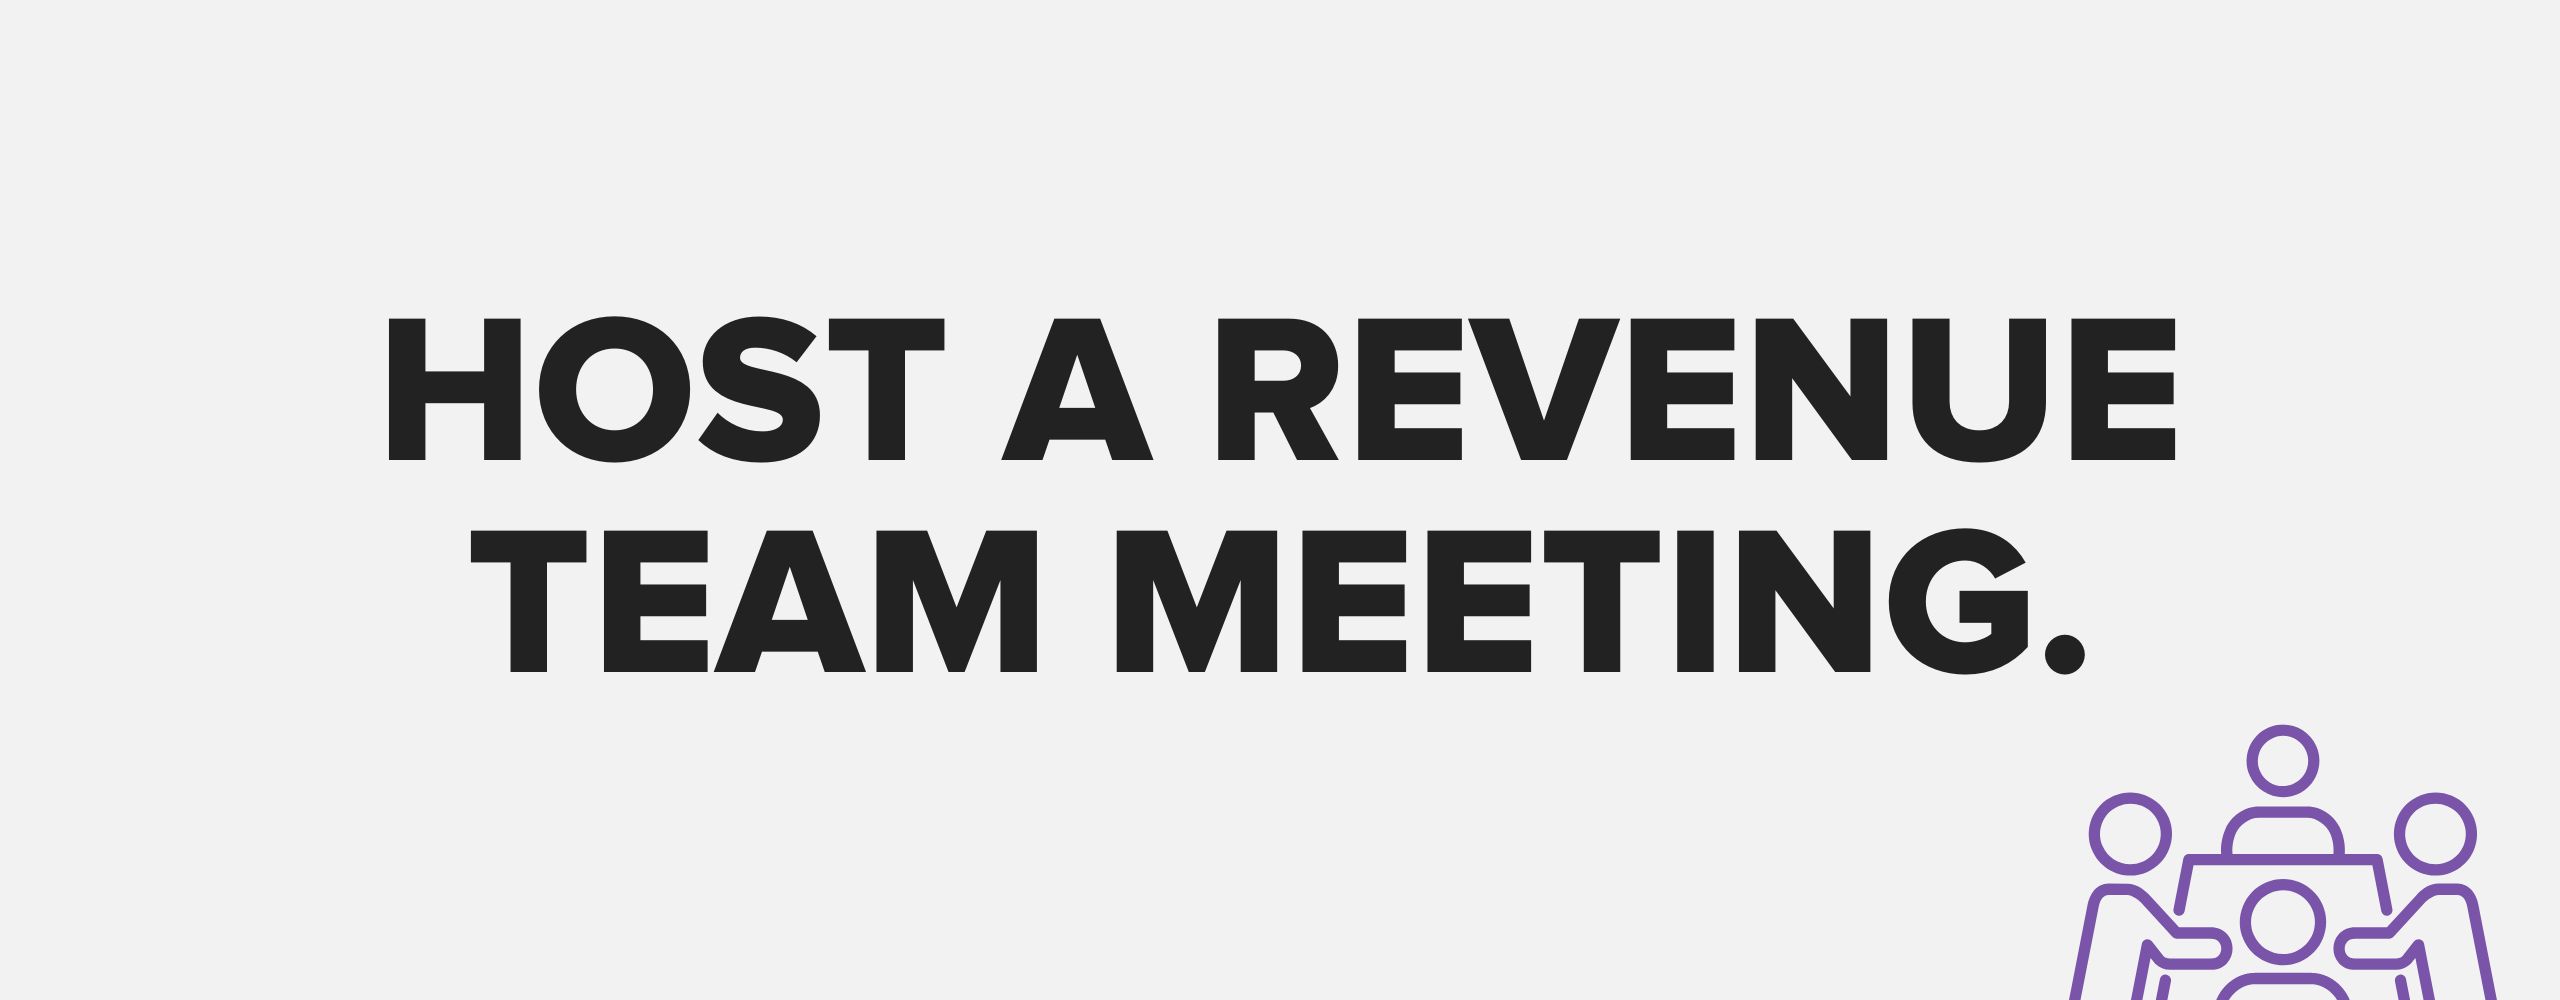 Revenue-team-meeting